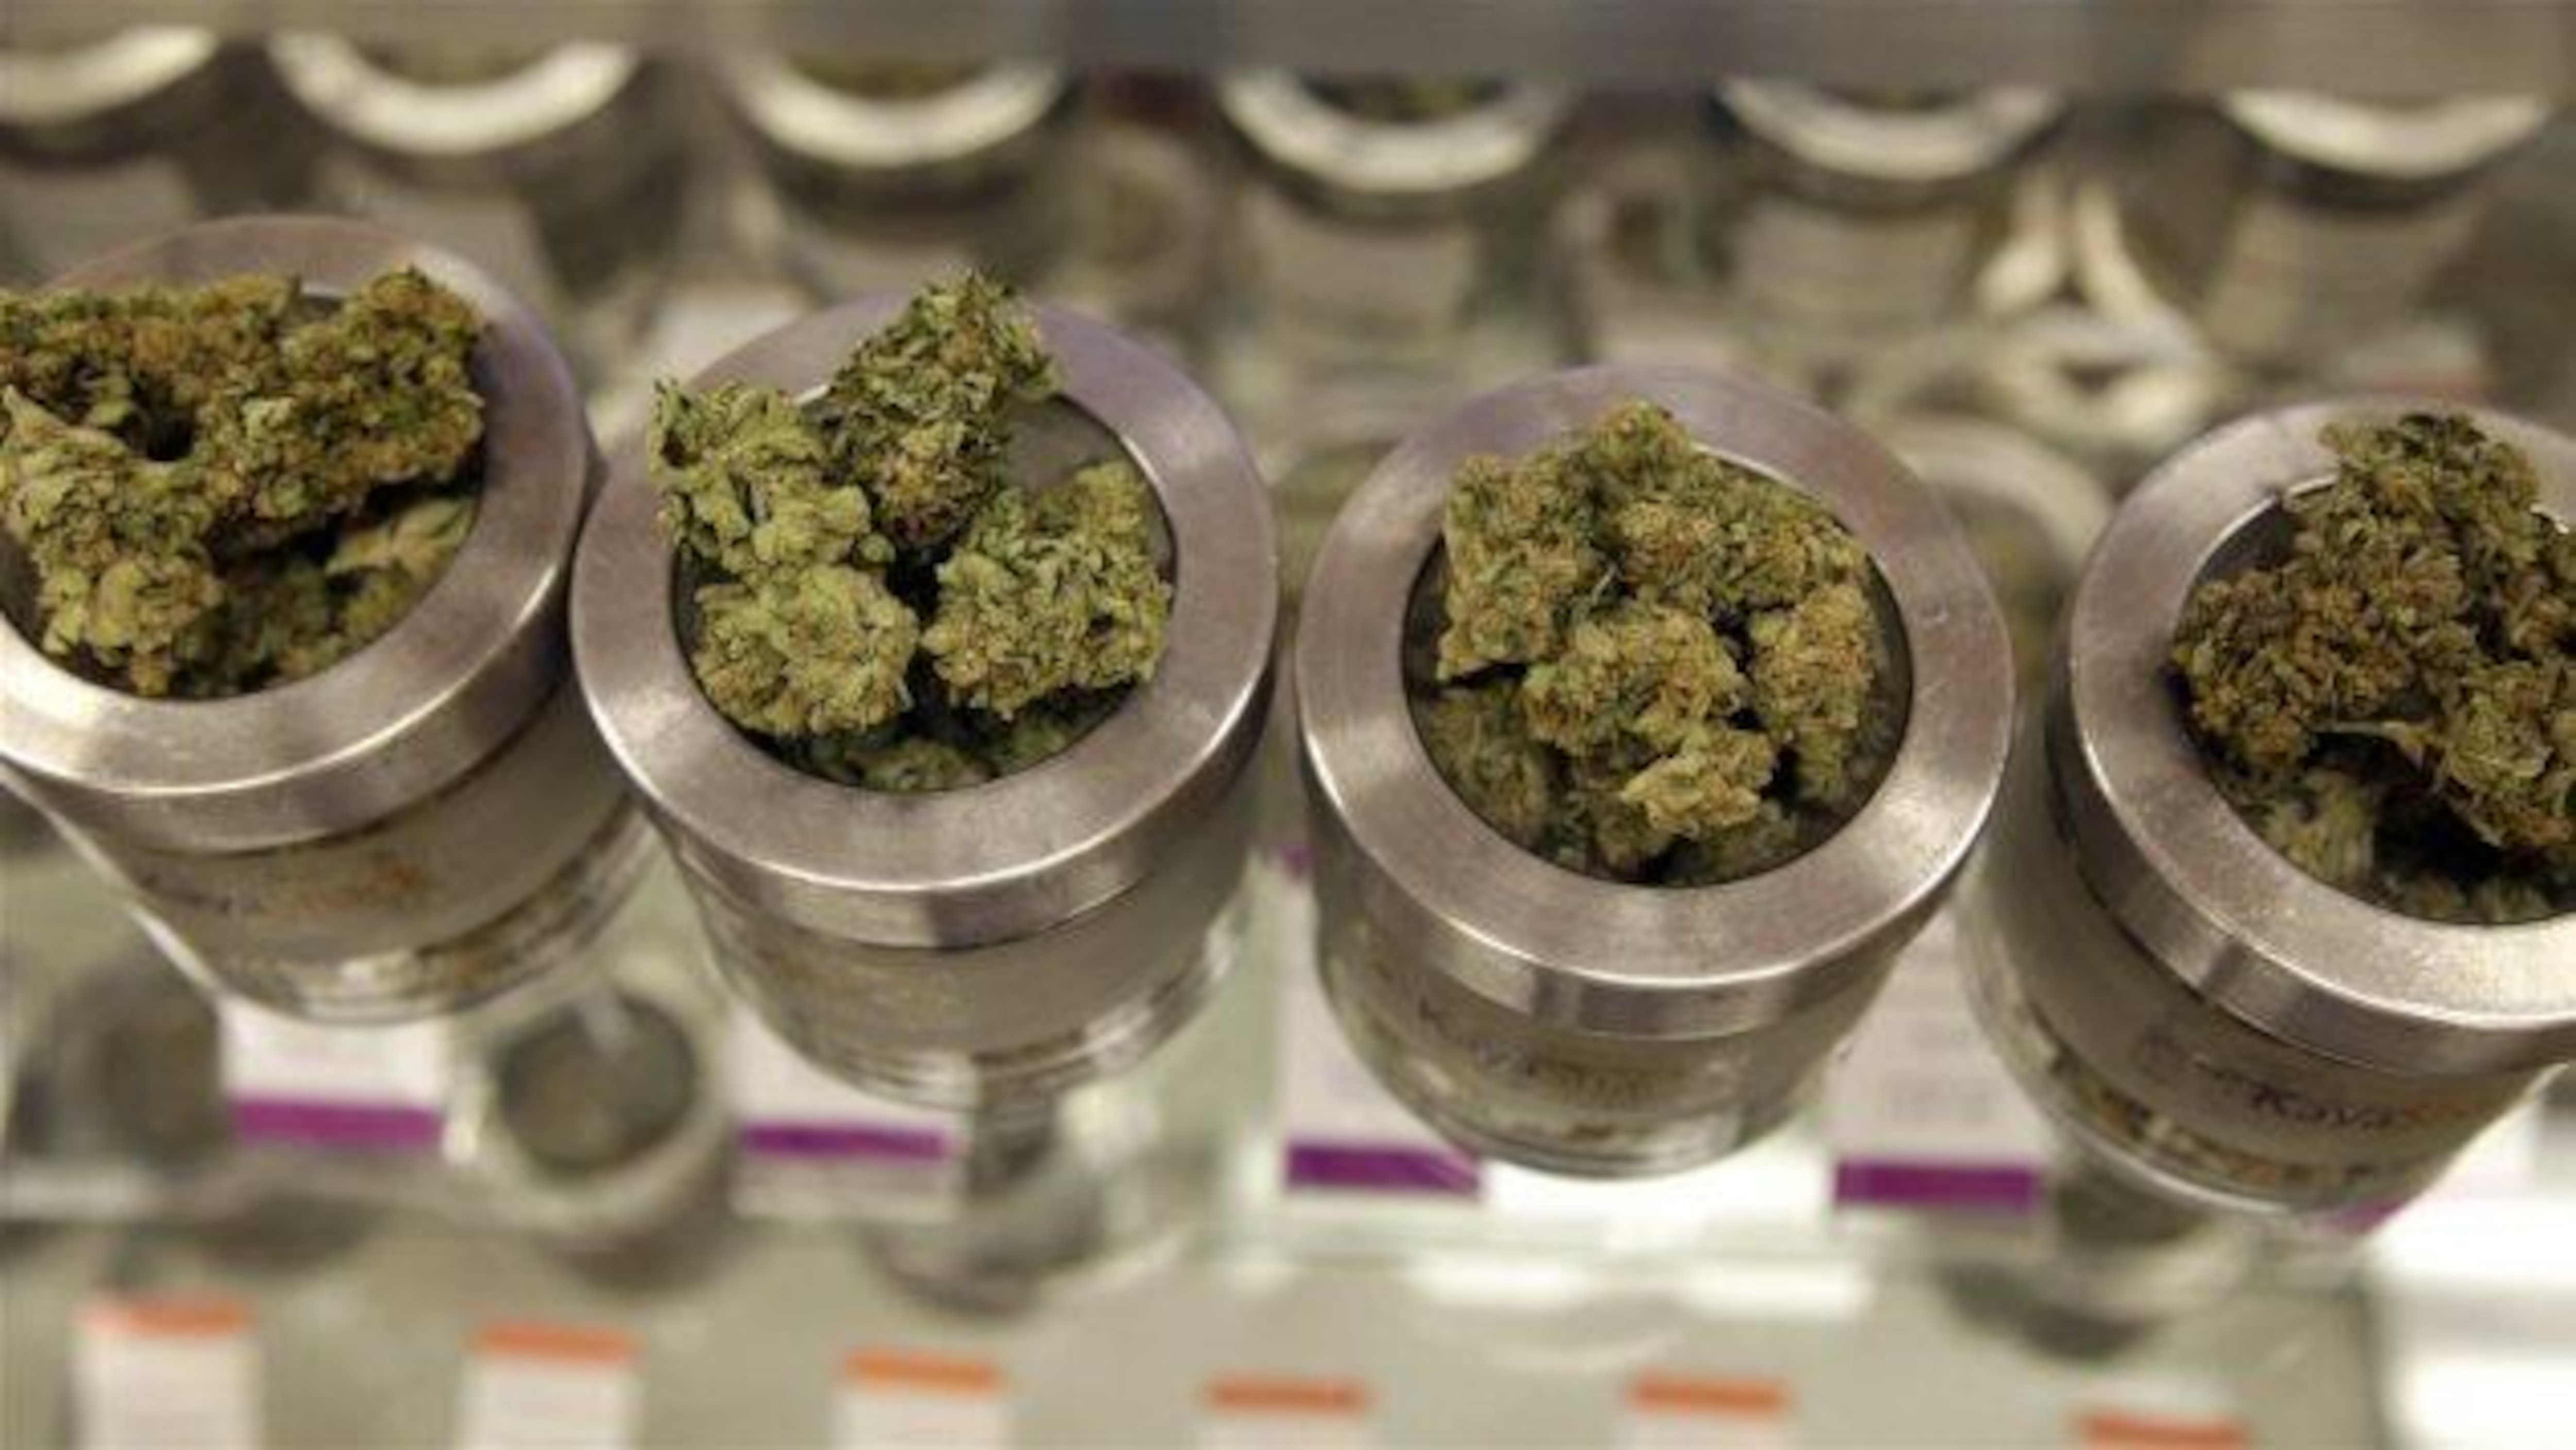 Le cannabis est dans de petits pots de verre.